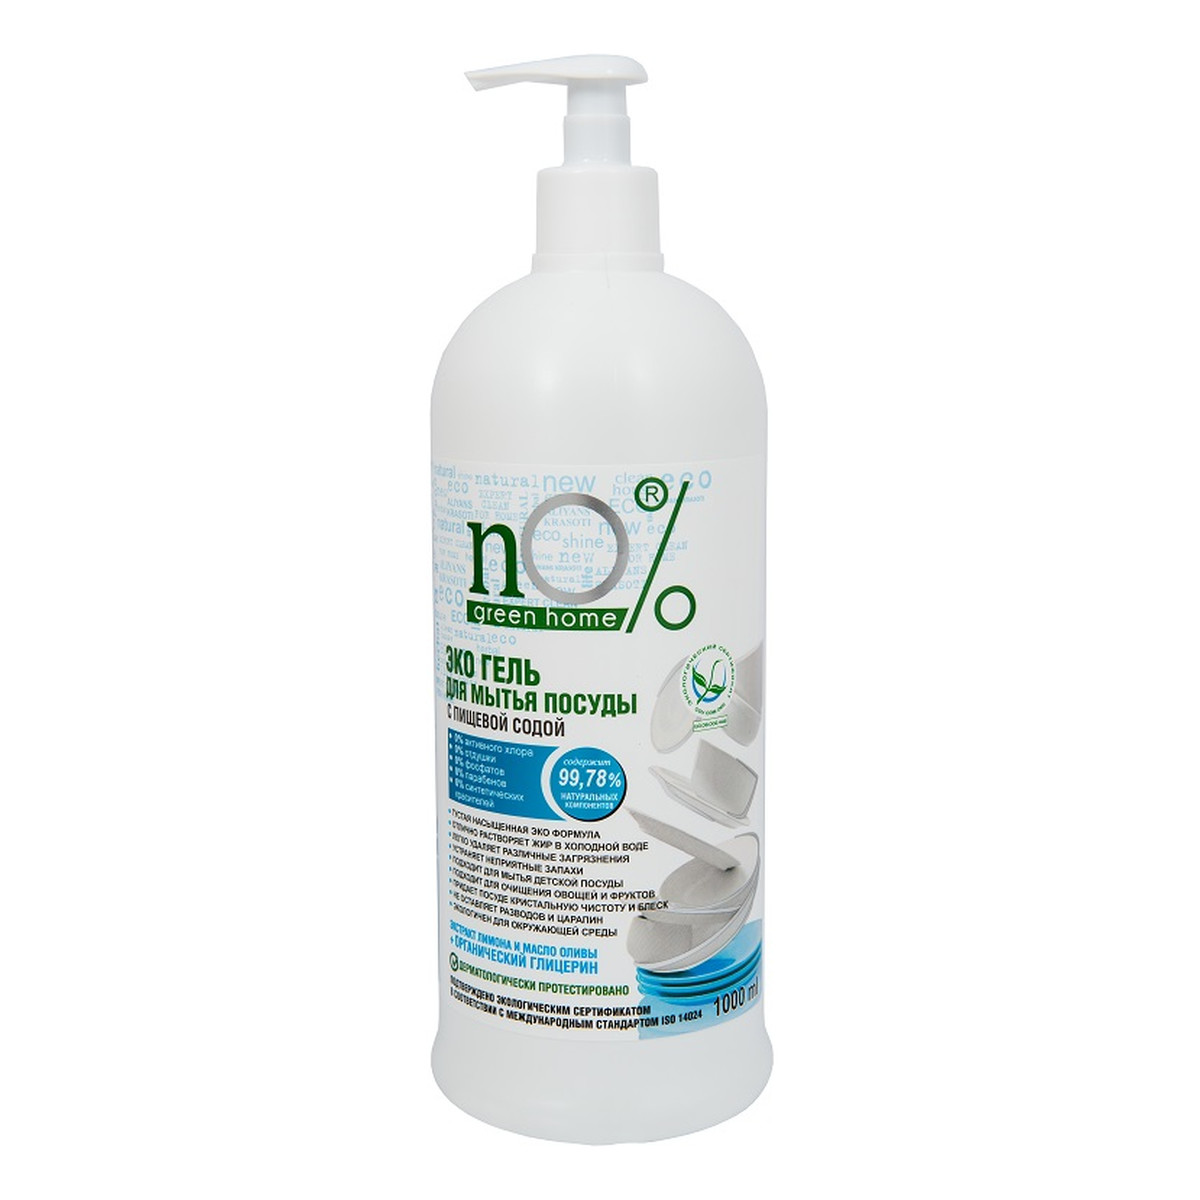 nO% Green Home Żel do mycia naczyń z sodą oczyszczoną 1000ml